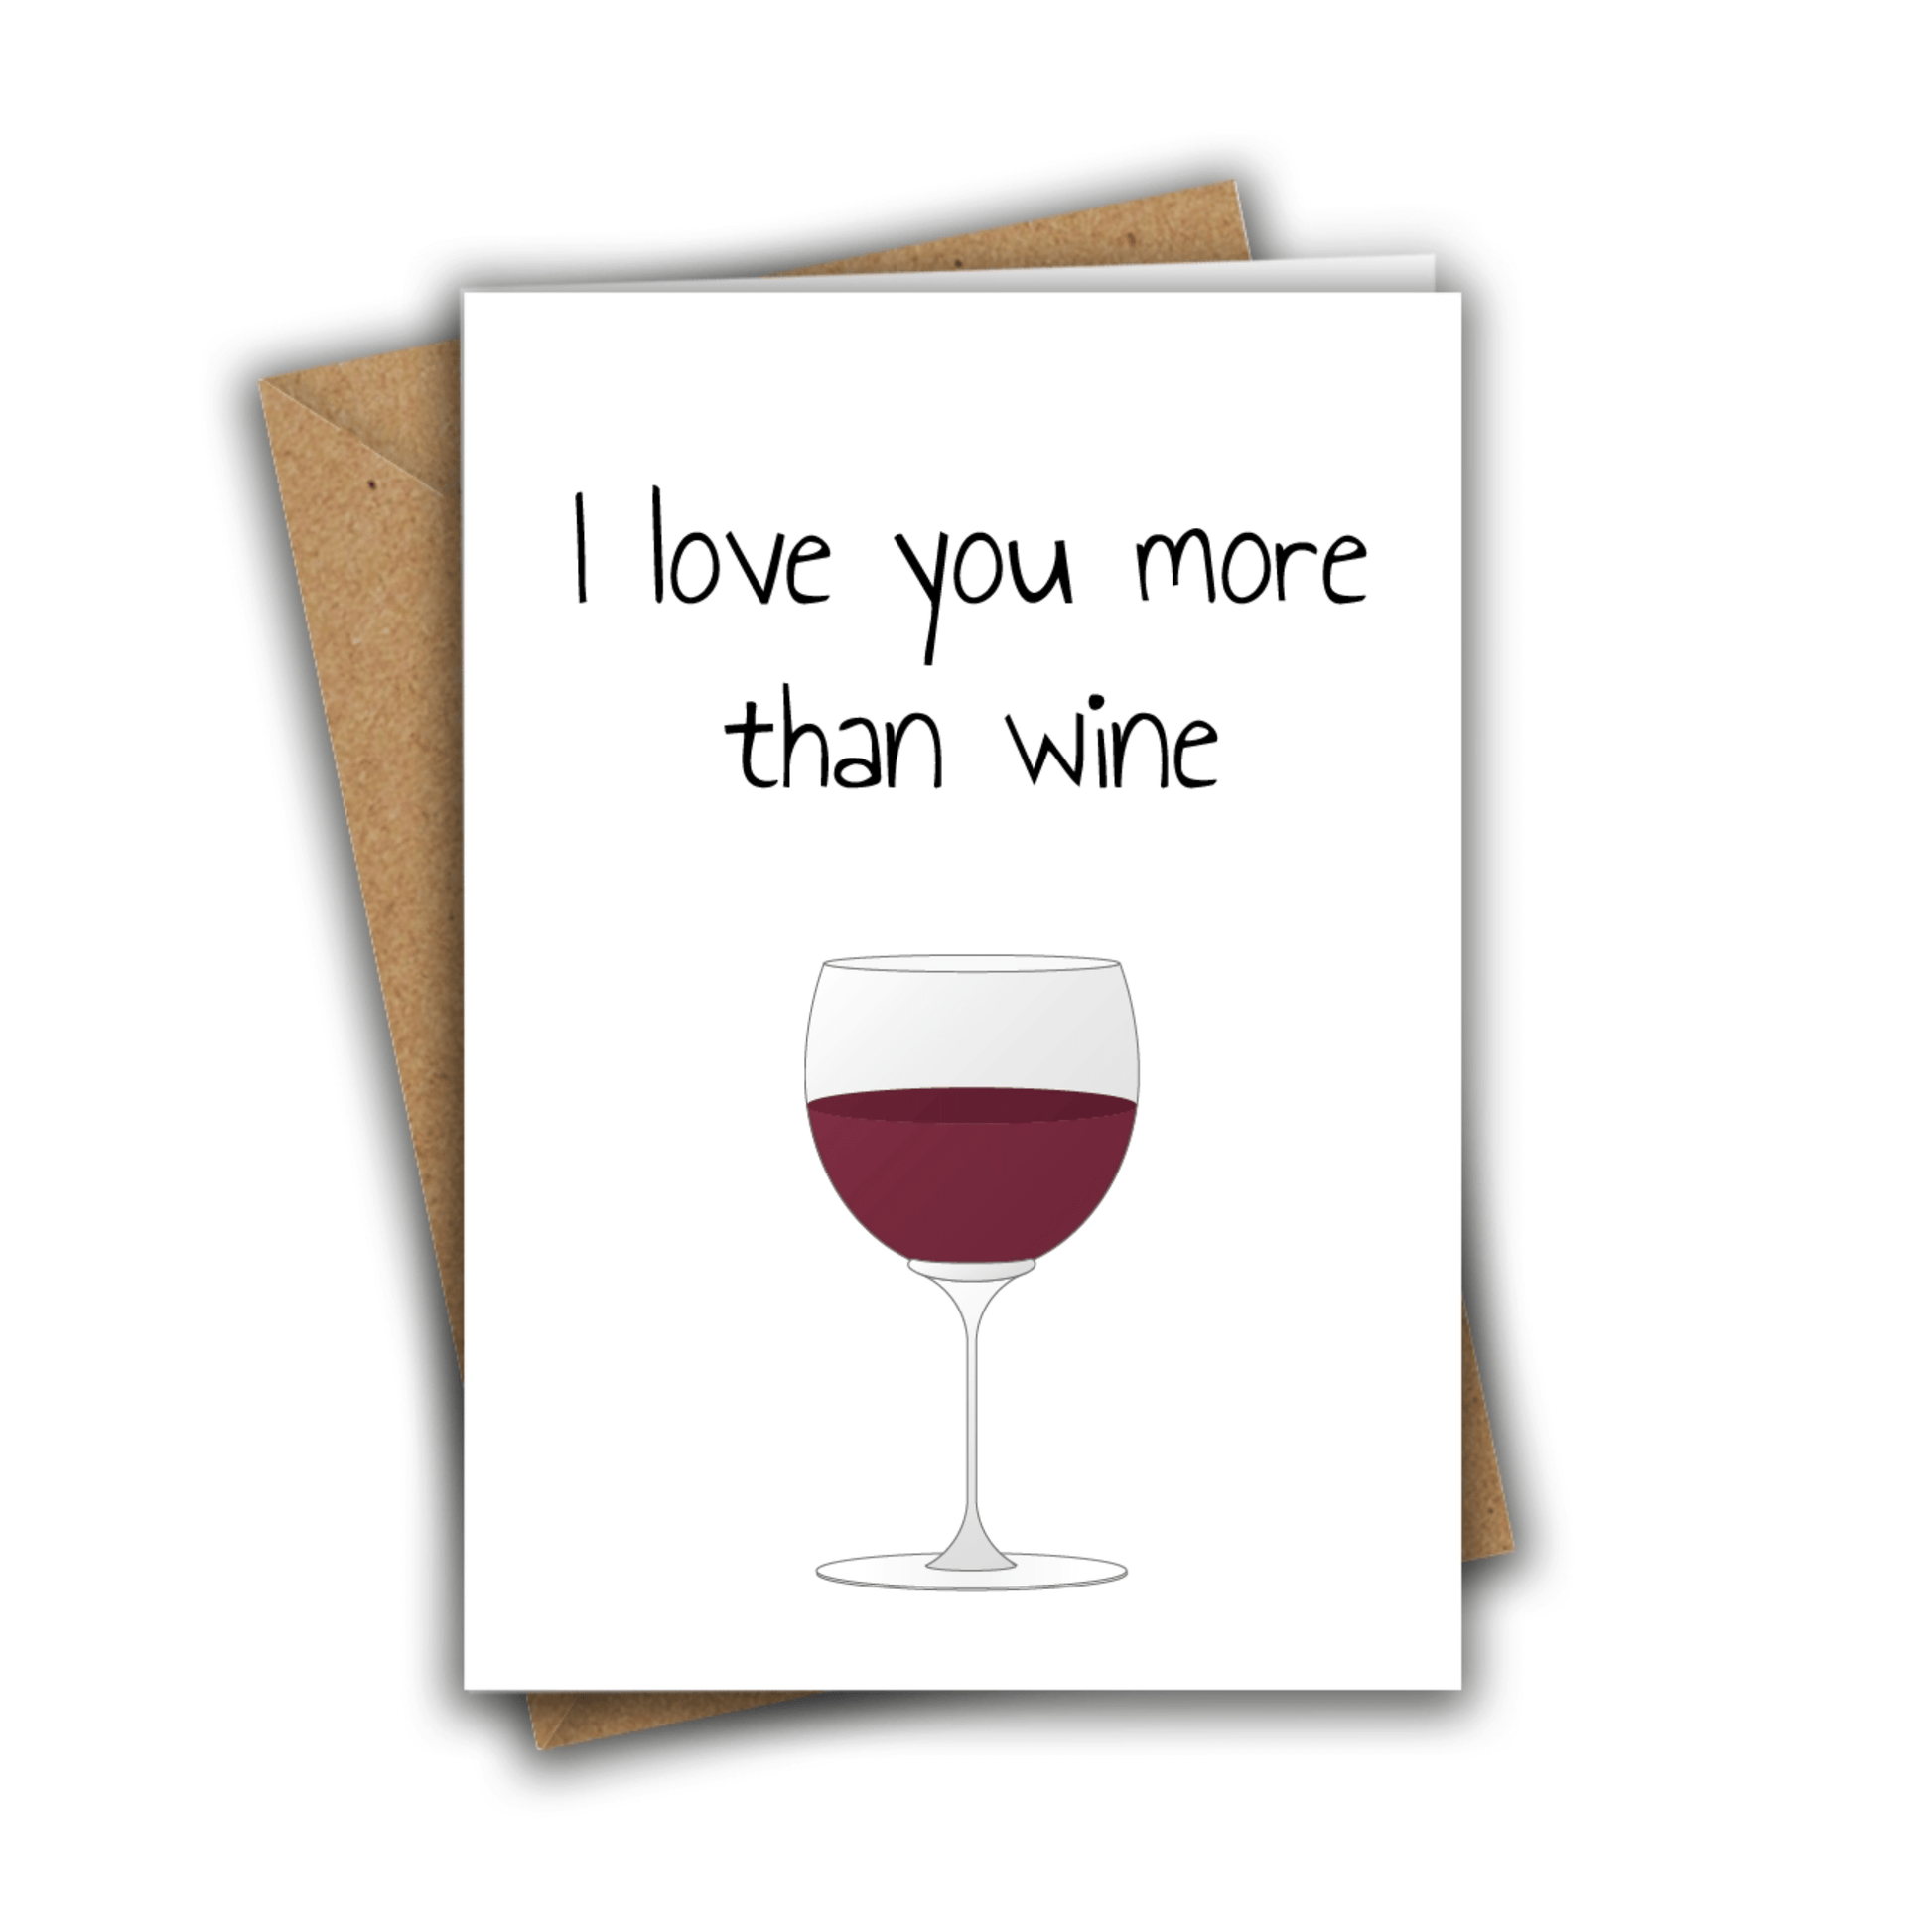 Little Kraken's I Love You More Than Wine, Love Cards for £3.50 each